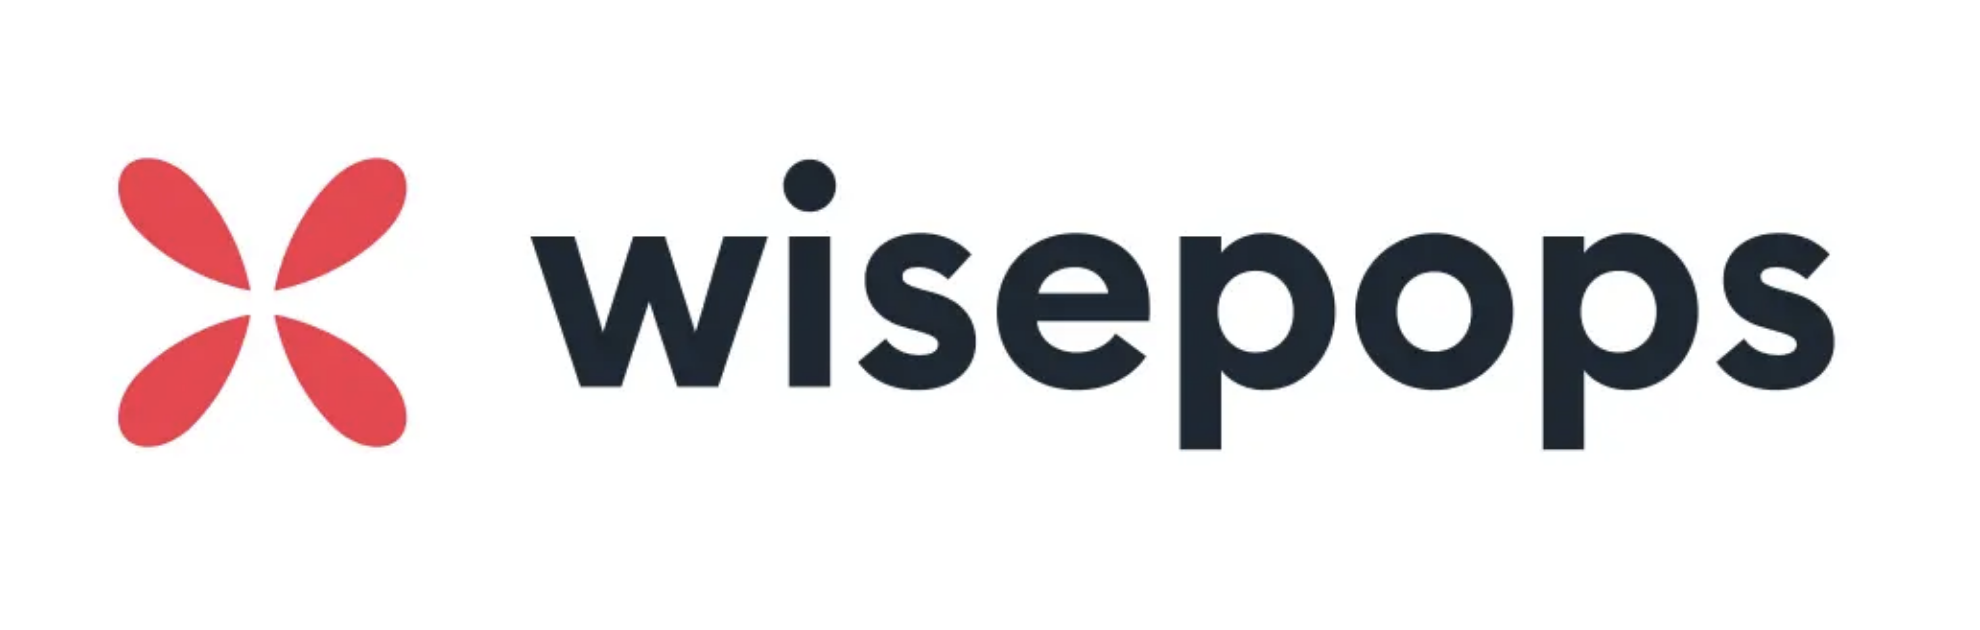 wisepops popup builder logo